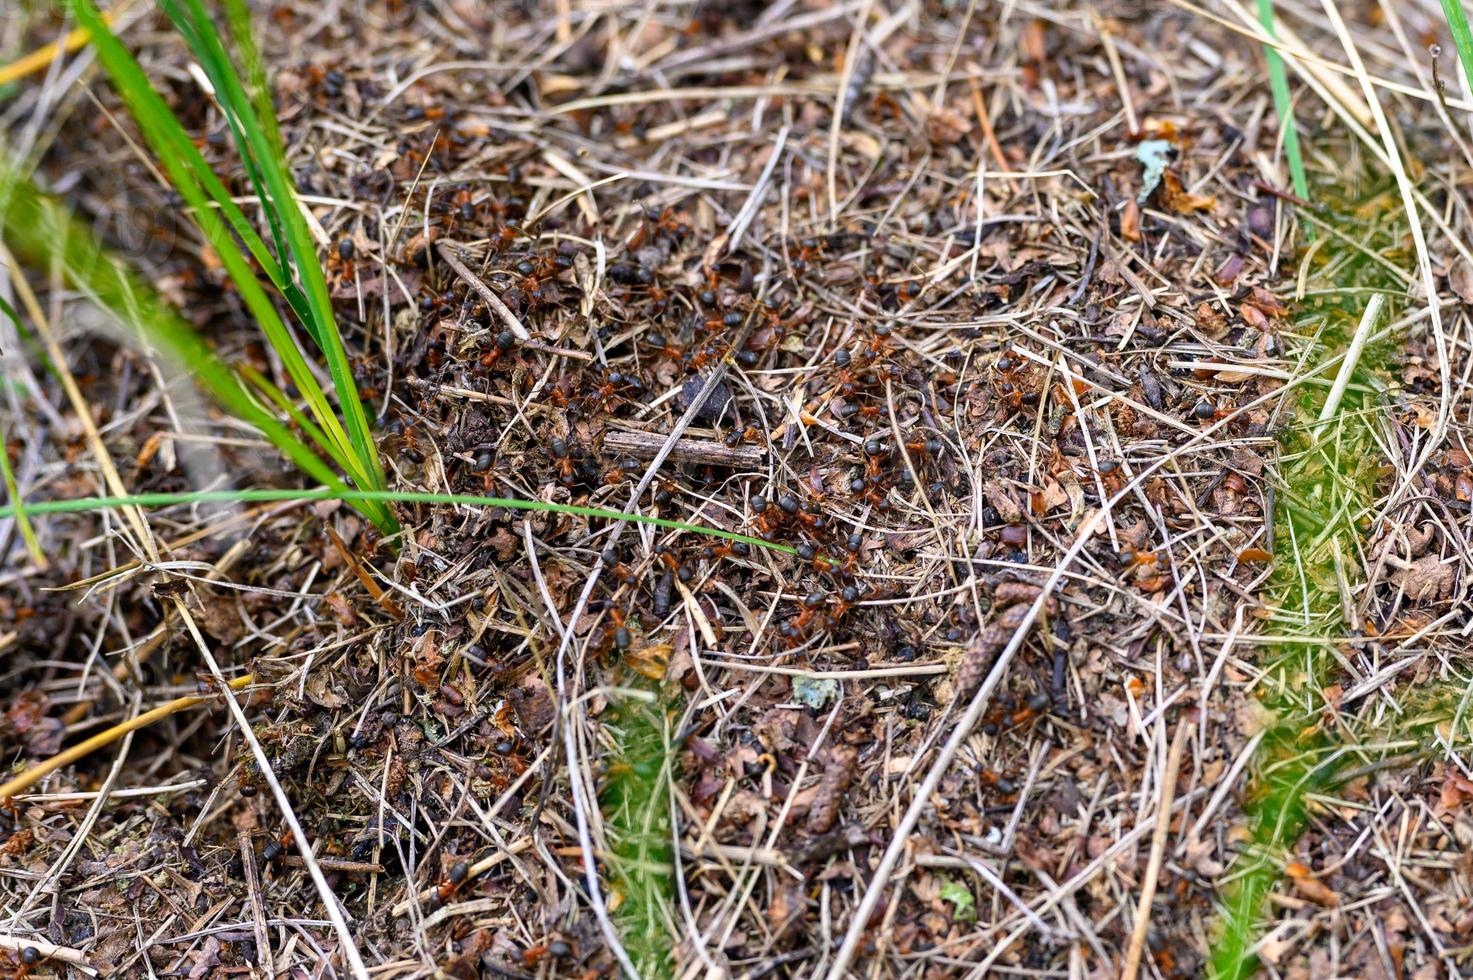 bos mierenhoop gemaakt van boomtakjes met mieren close-up foto